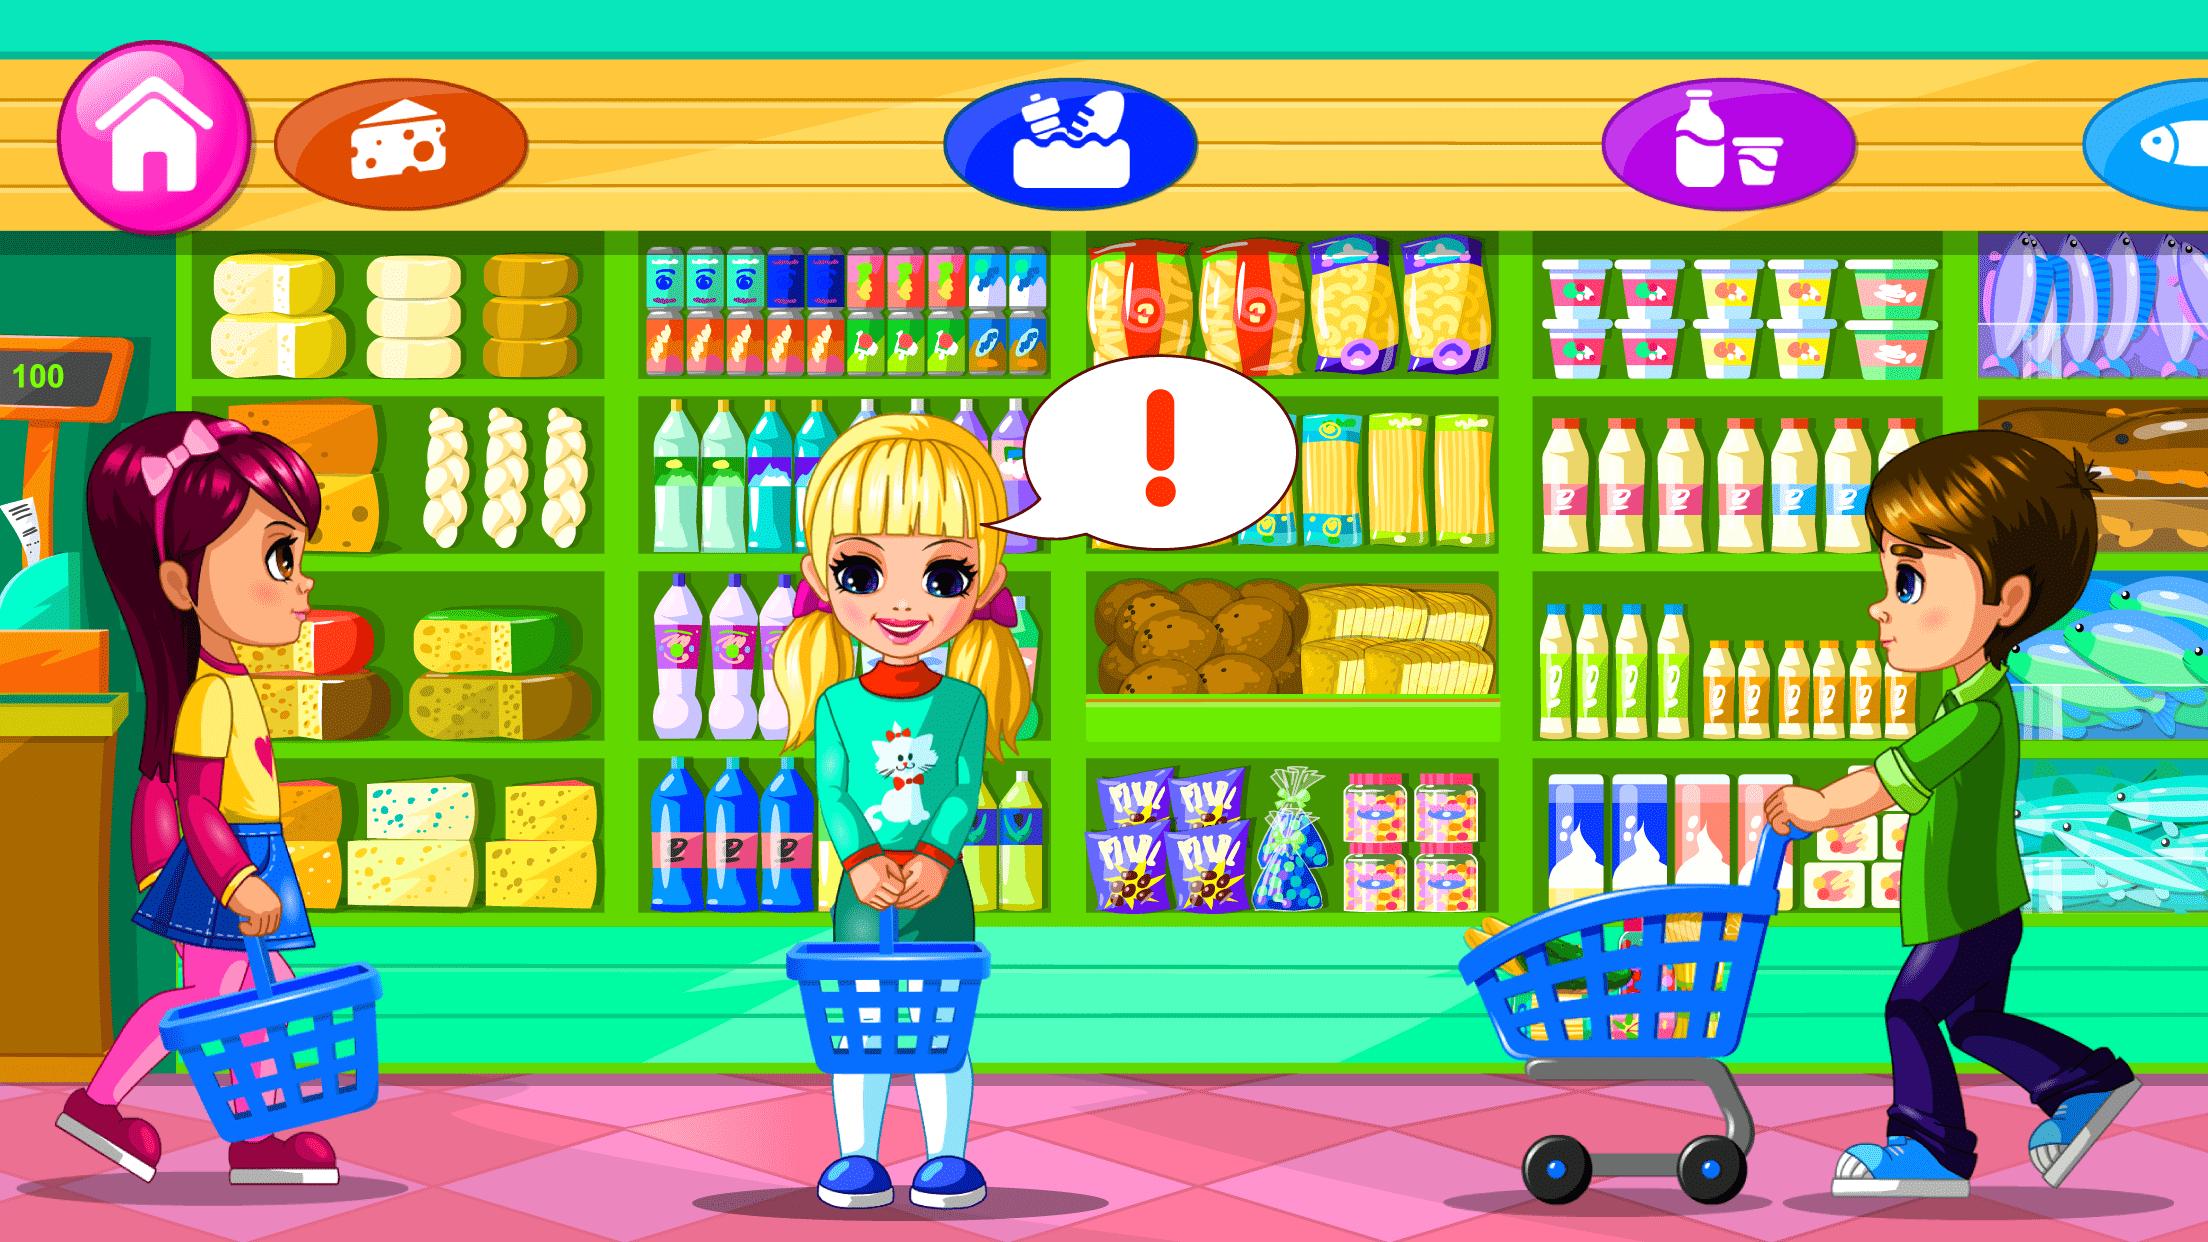 Https market games. Игра "супермаркет". Игра продуктовый магазин. Игра про супермаркет-2. Игры для девочек.